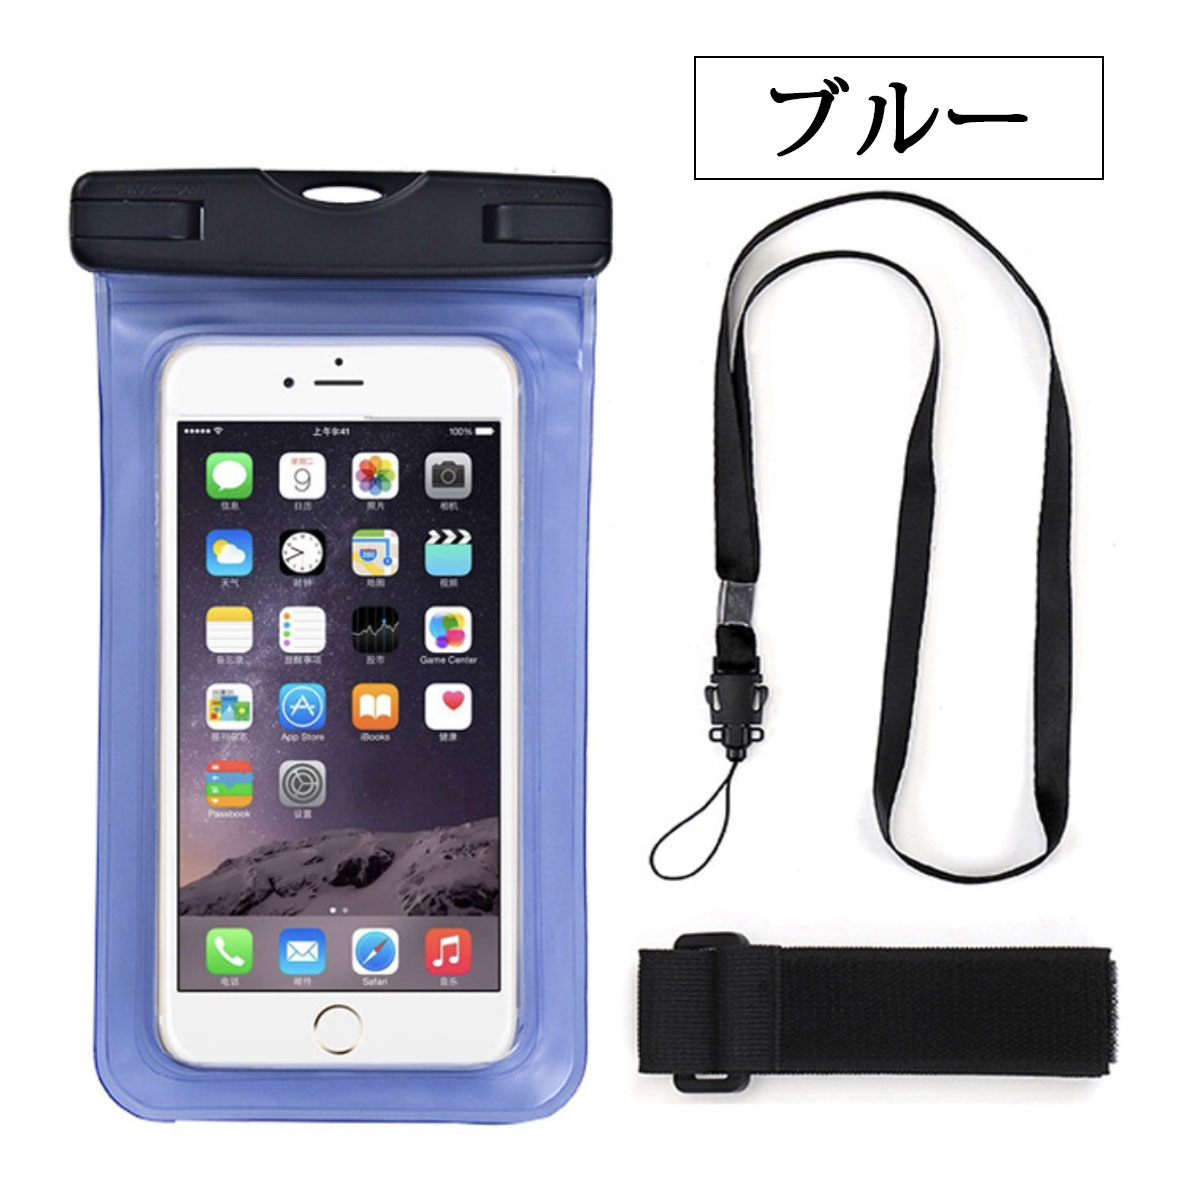 スマホ 防水ケース スマートフォン 入れたまま操作可 waterproof case iPhone ...